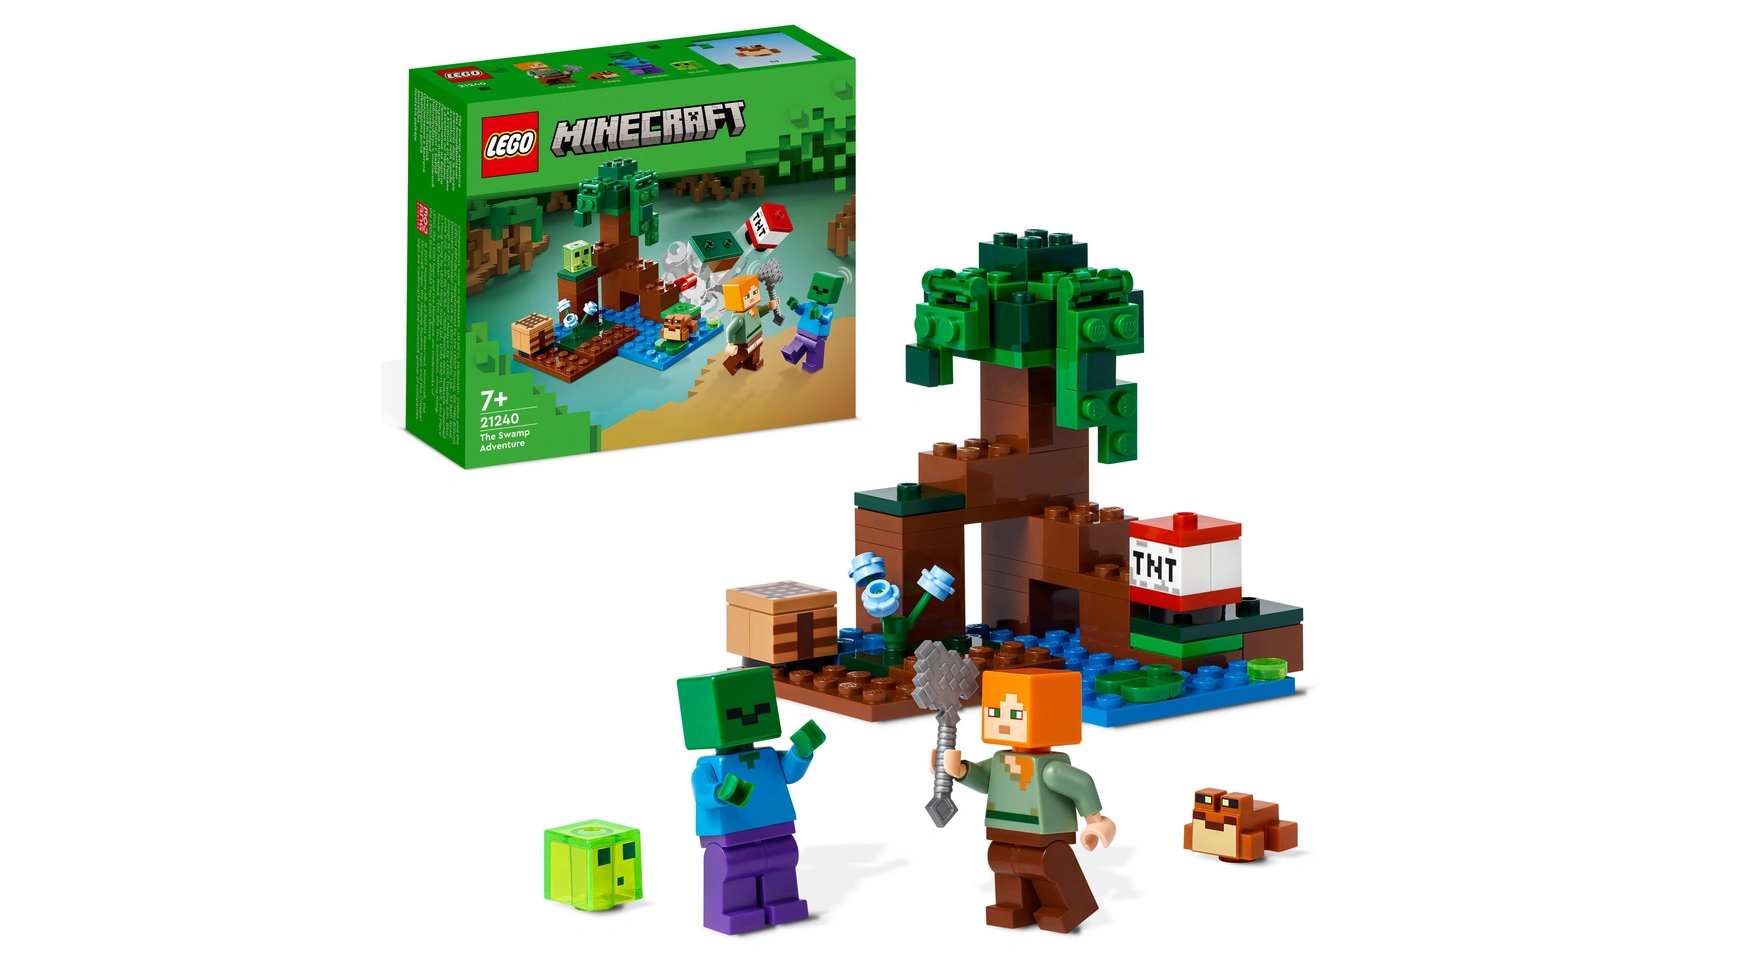 Lego Minecraft Болотное приключение, игрушка с фигурками lego minecraft подземелье пещера набор игрушек с фигурками скелетов